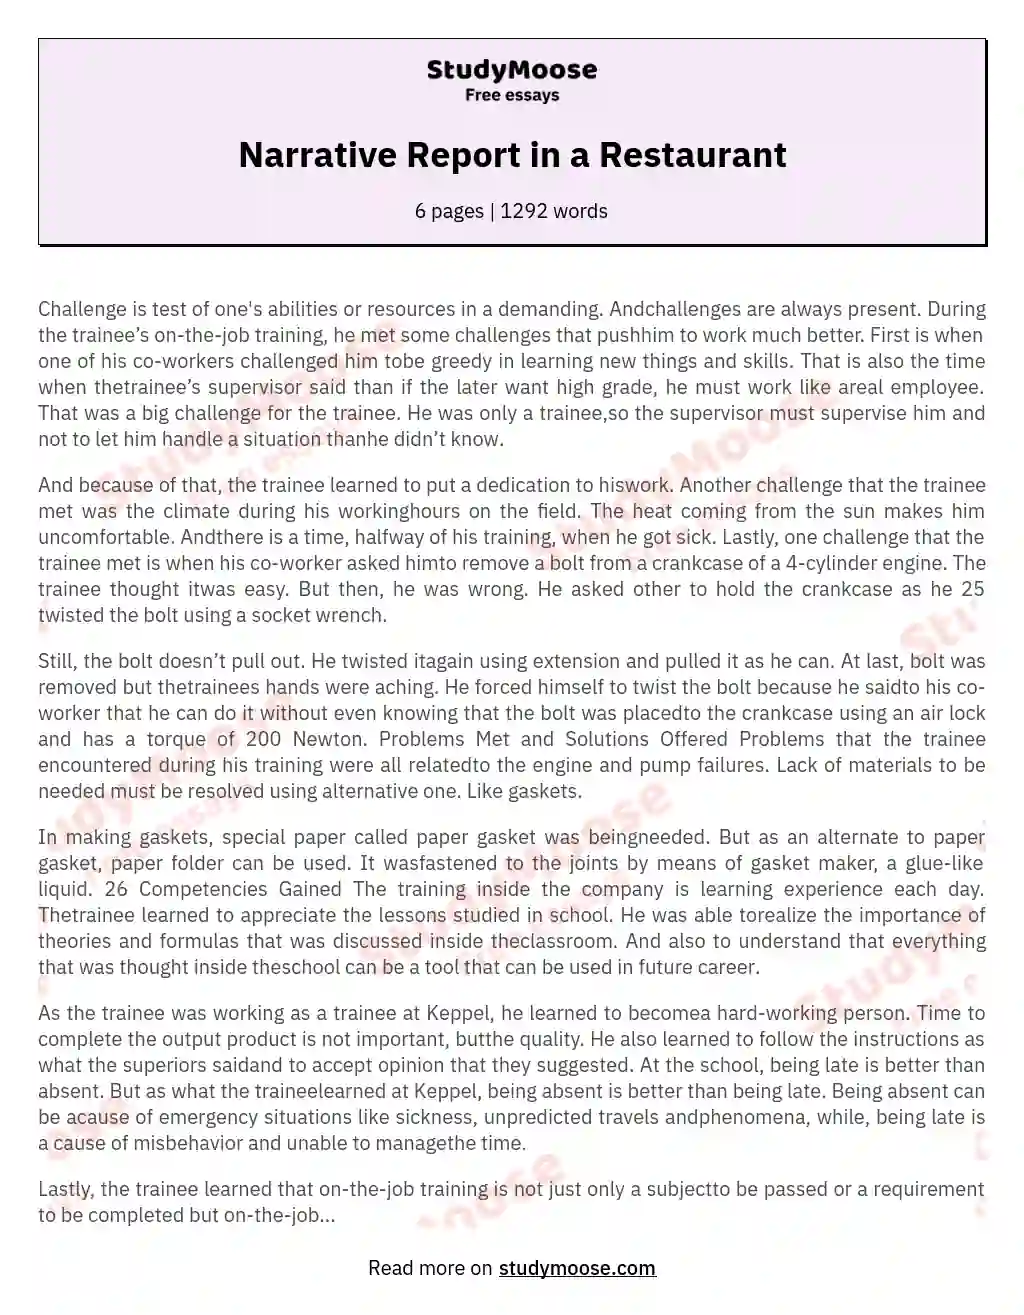 Narrative Report in a Restaurant essay